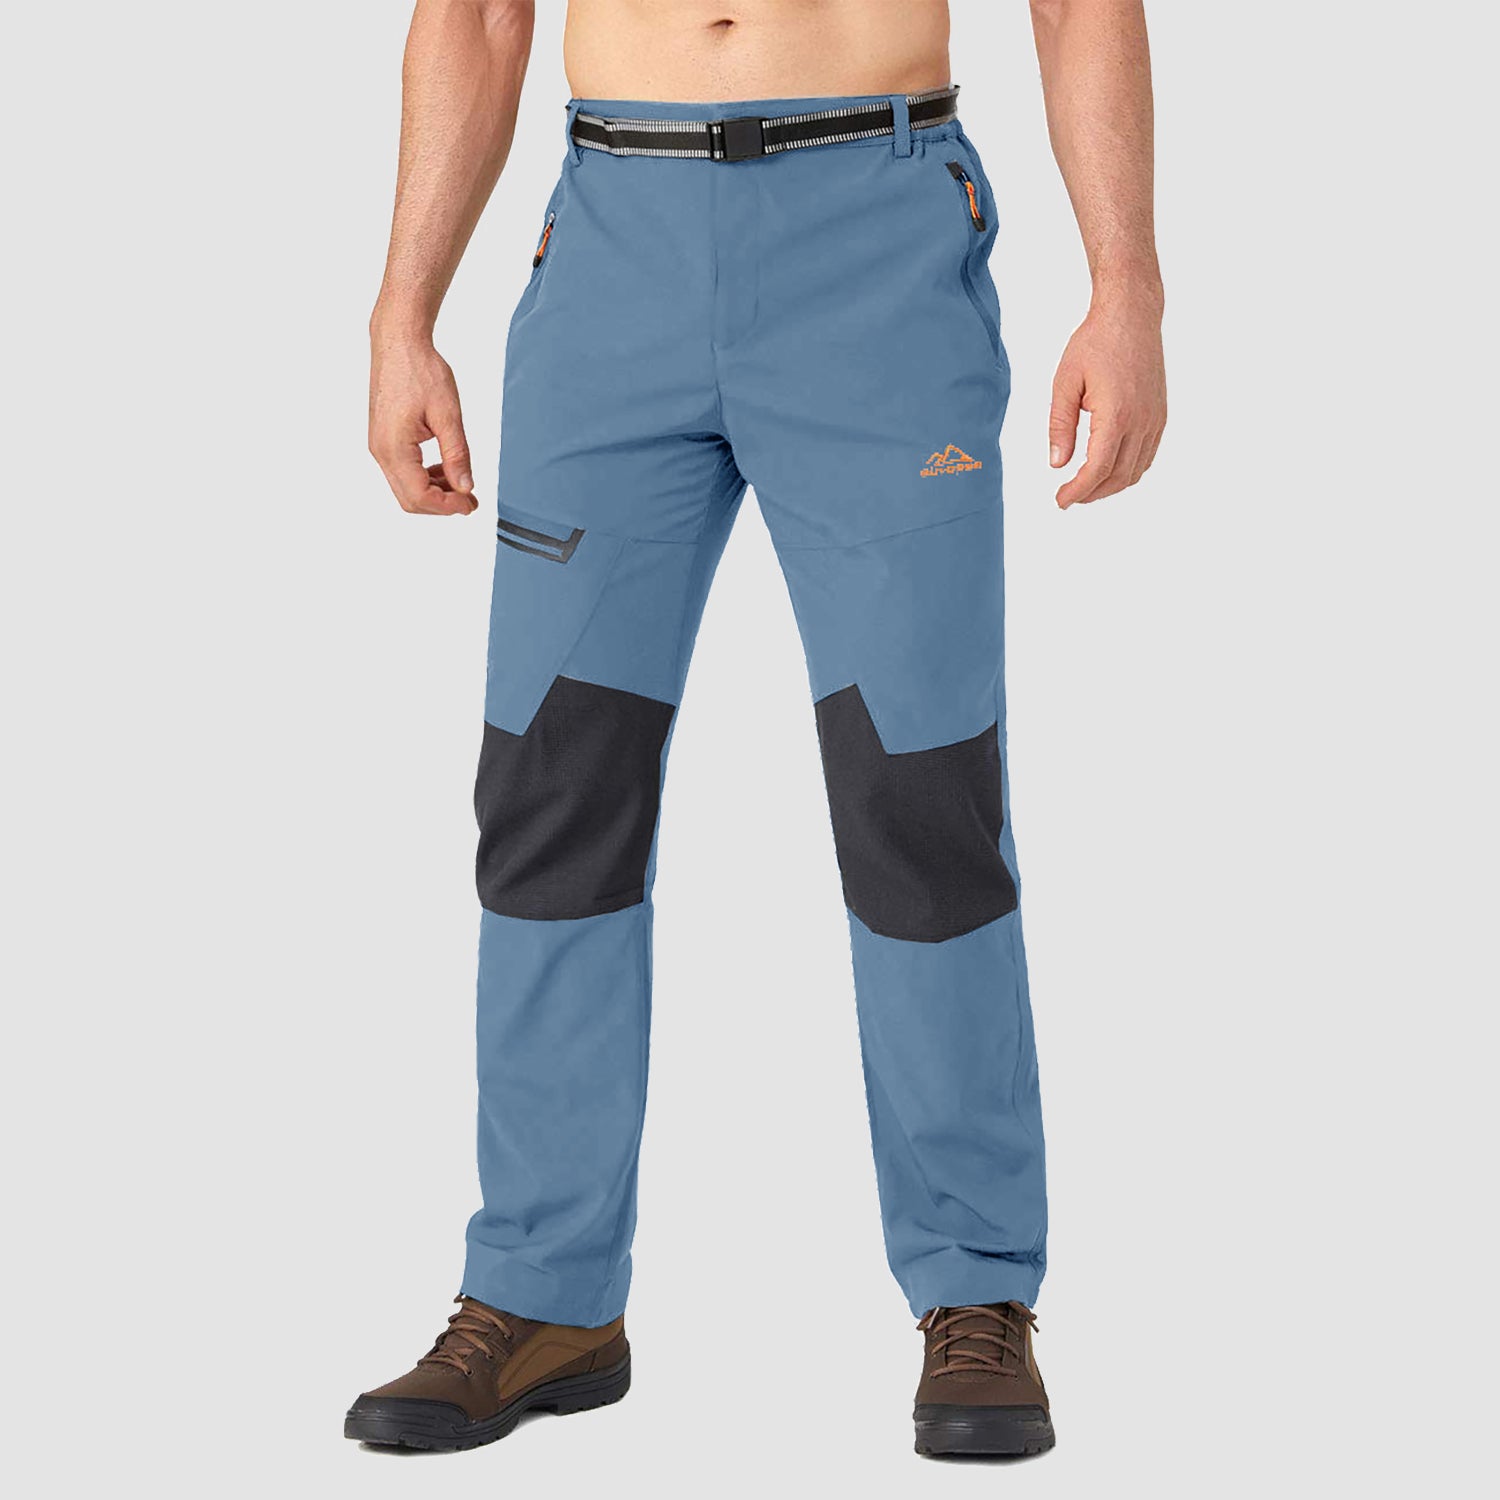 https://magcomsen.com/cdn/shop/products/Men_s-Winter-Pants-Fleece-Lined-Ski-Snow-Pants-Water-Resistant-with-4-Zip-Pockets_36.jpg?v=1667542830&width=1500